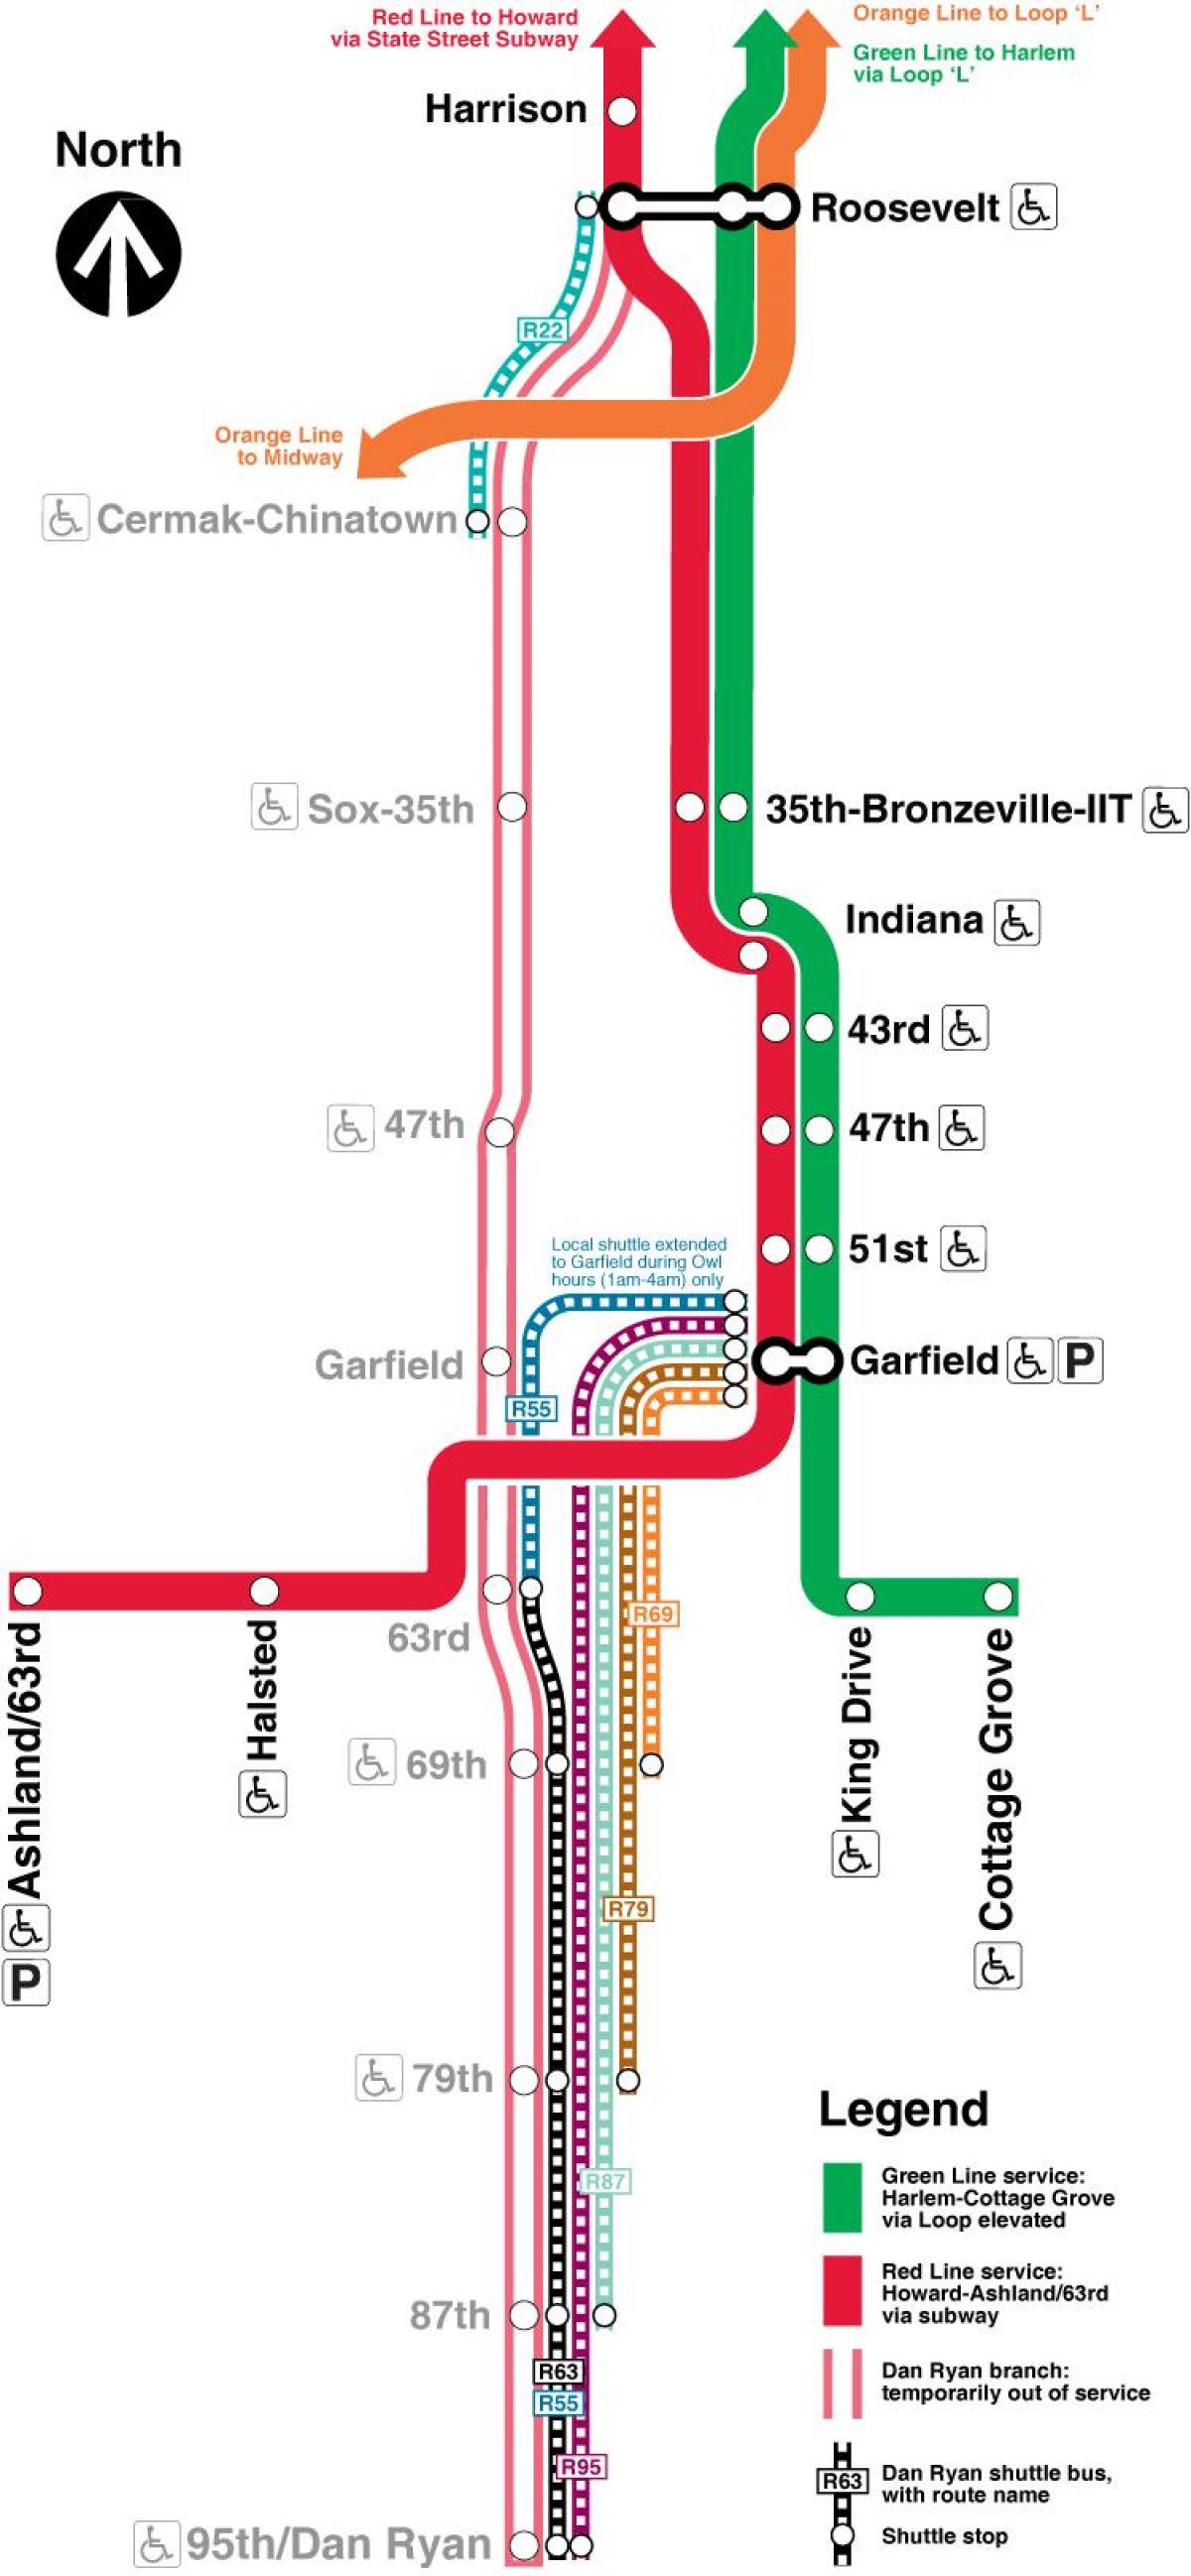 Chicago mapa metro liña vermella